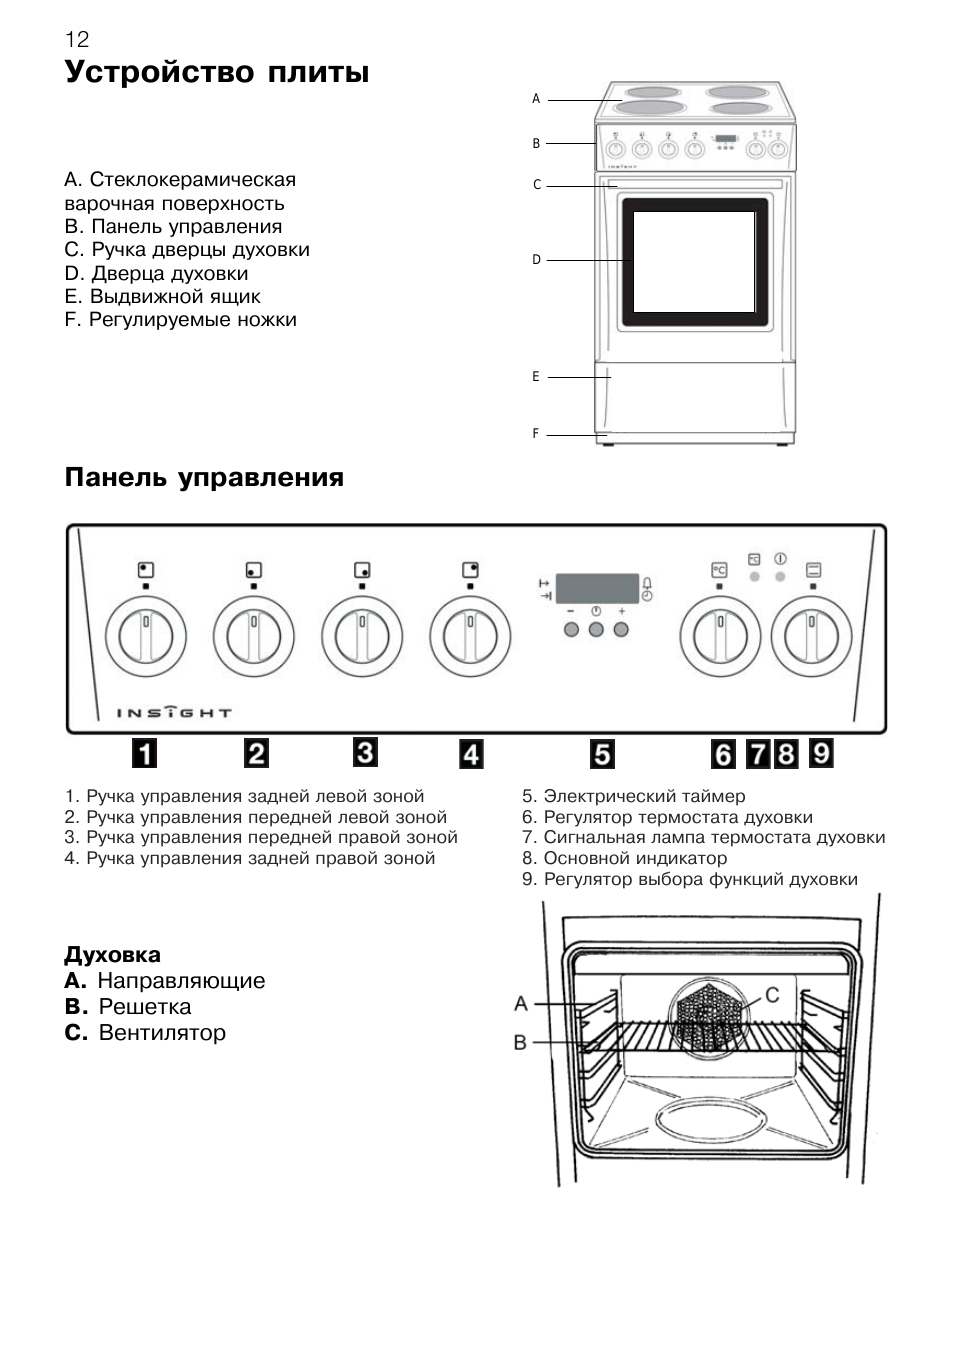 Как пользоваться электрической плитой — инструкция, безопасность